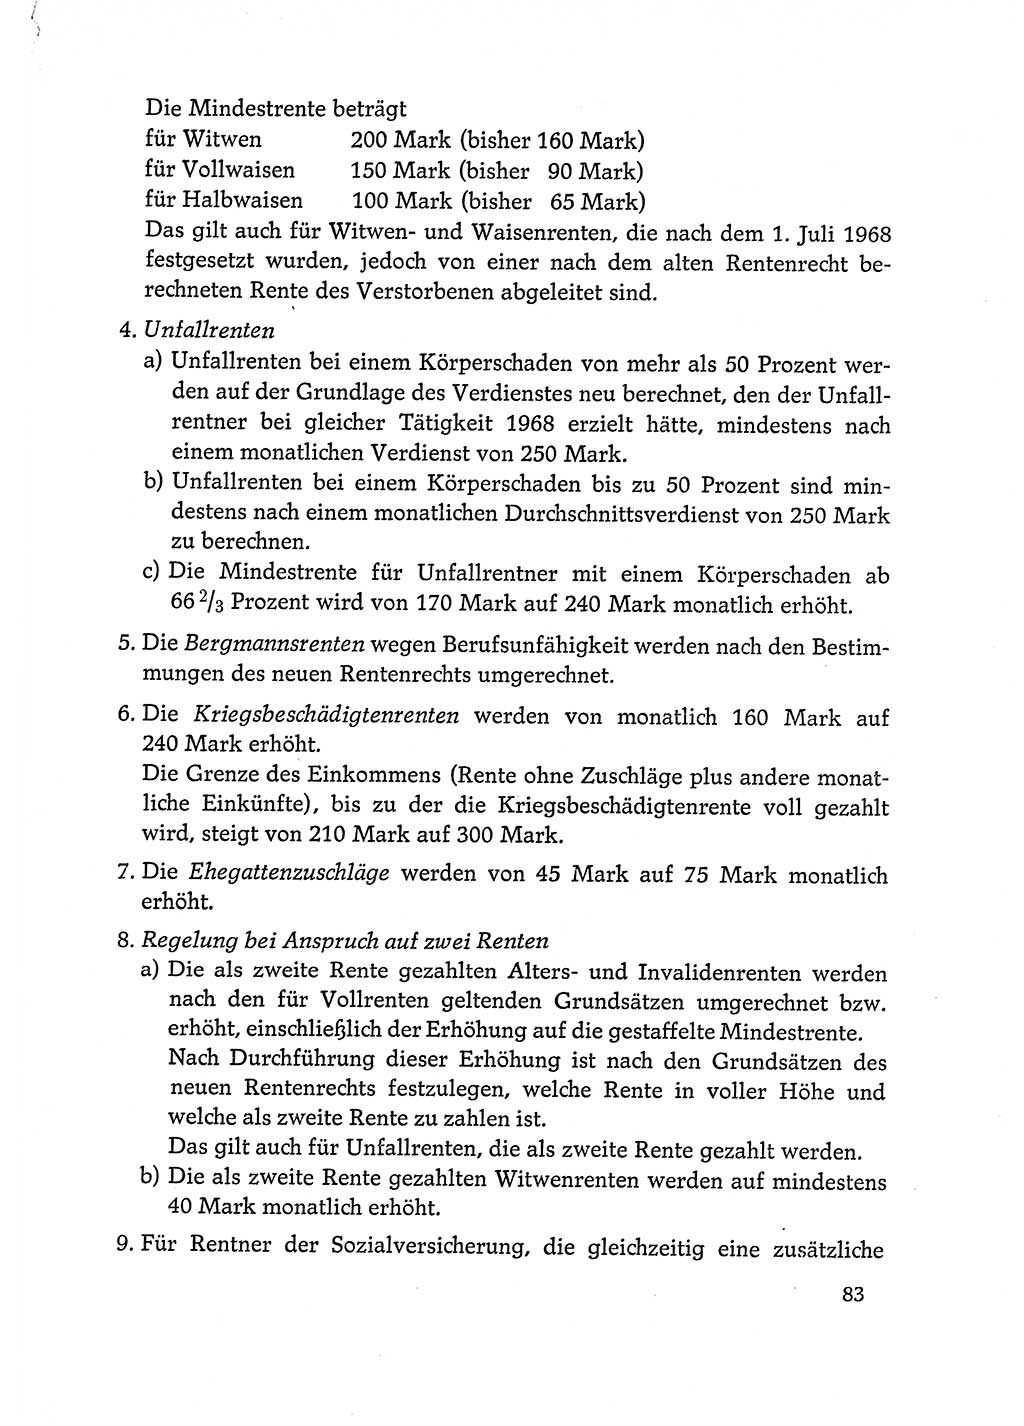 Dokumente der Sozialistischen Einheitspartei Deutschlands (SED) [Deutsche Demokratische Republik (DDR)] 1972-1973, Seite 83 (Dok. SED DDR 1972-1973, S. 83)